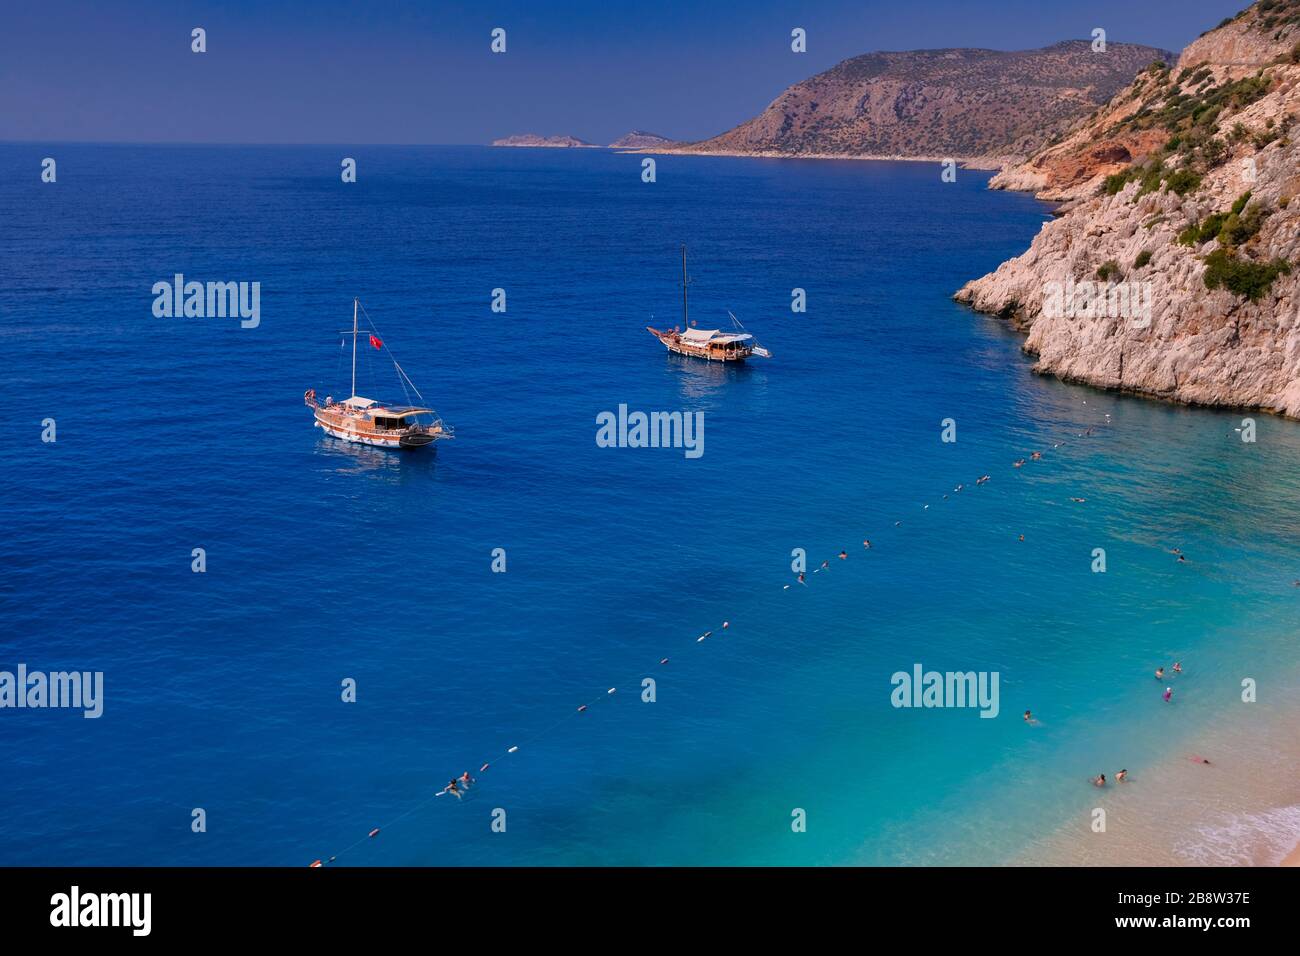 Paradiesischer Strand in Kas, Antalya - Türkei. Leerer Strand mit geschlossenen Sonnenschirmen am türkischen Strand Kaputaj Kemer Antalya. Stockfoto